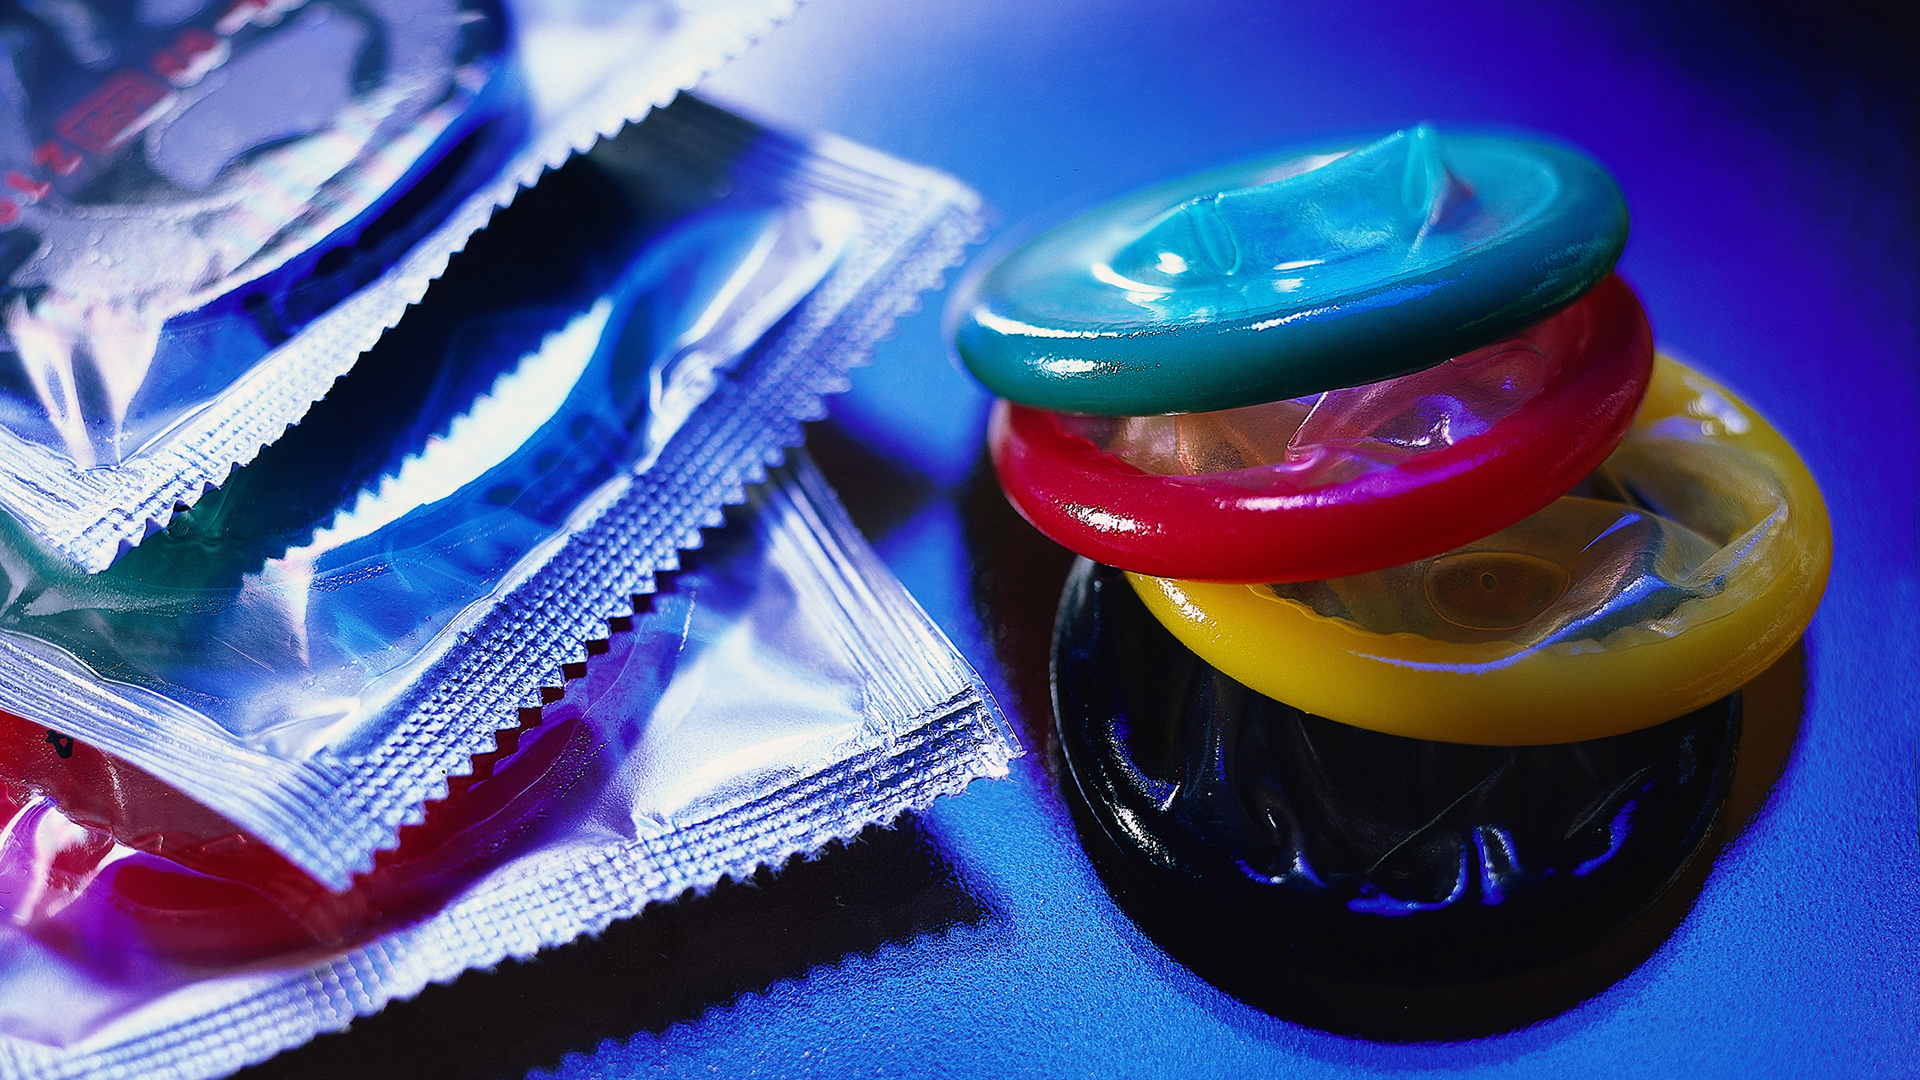 Kondome | picture-alliance / OKAPIA KG - F